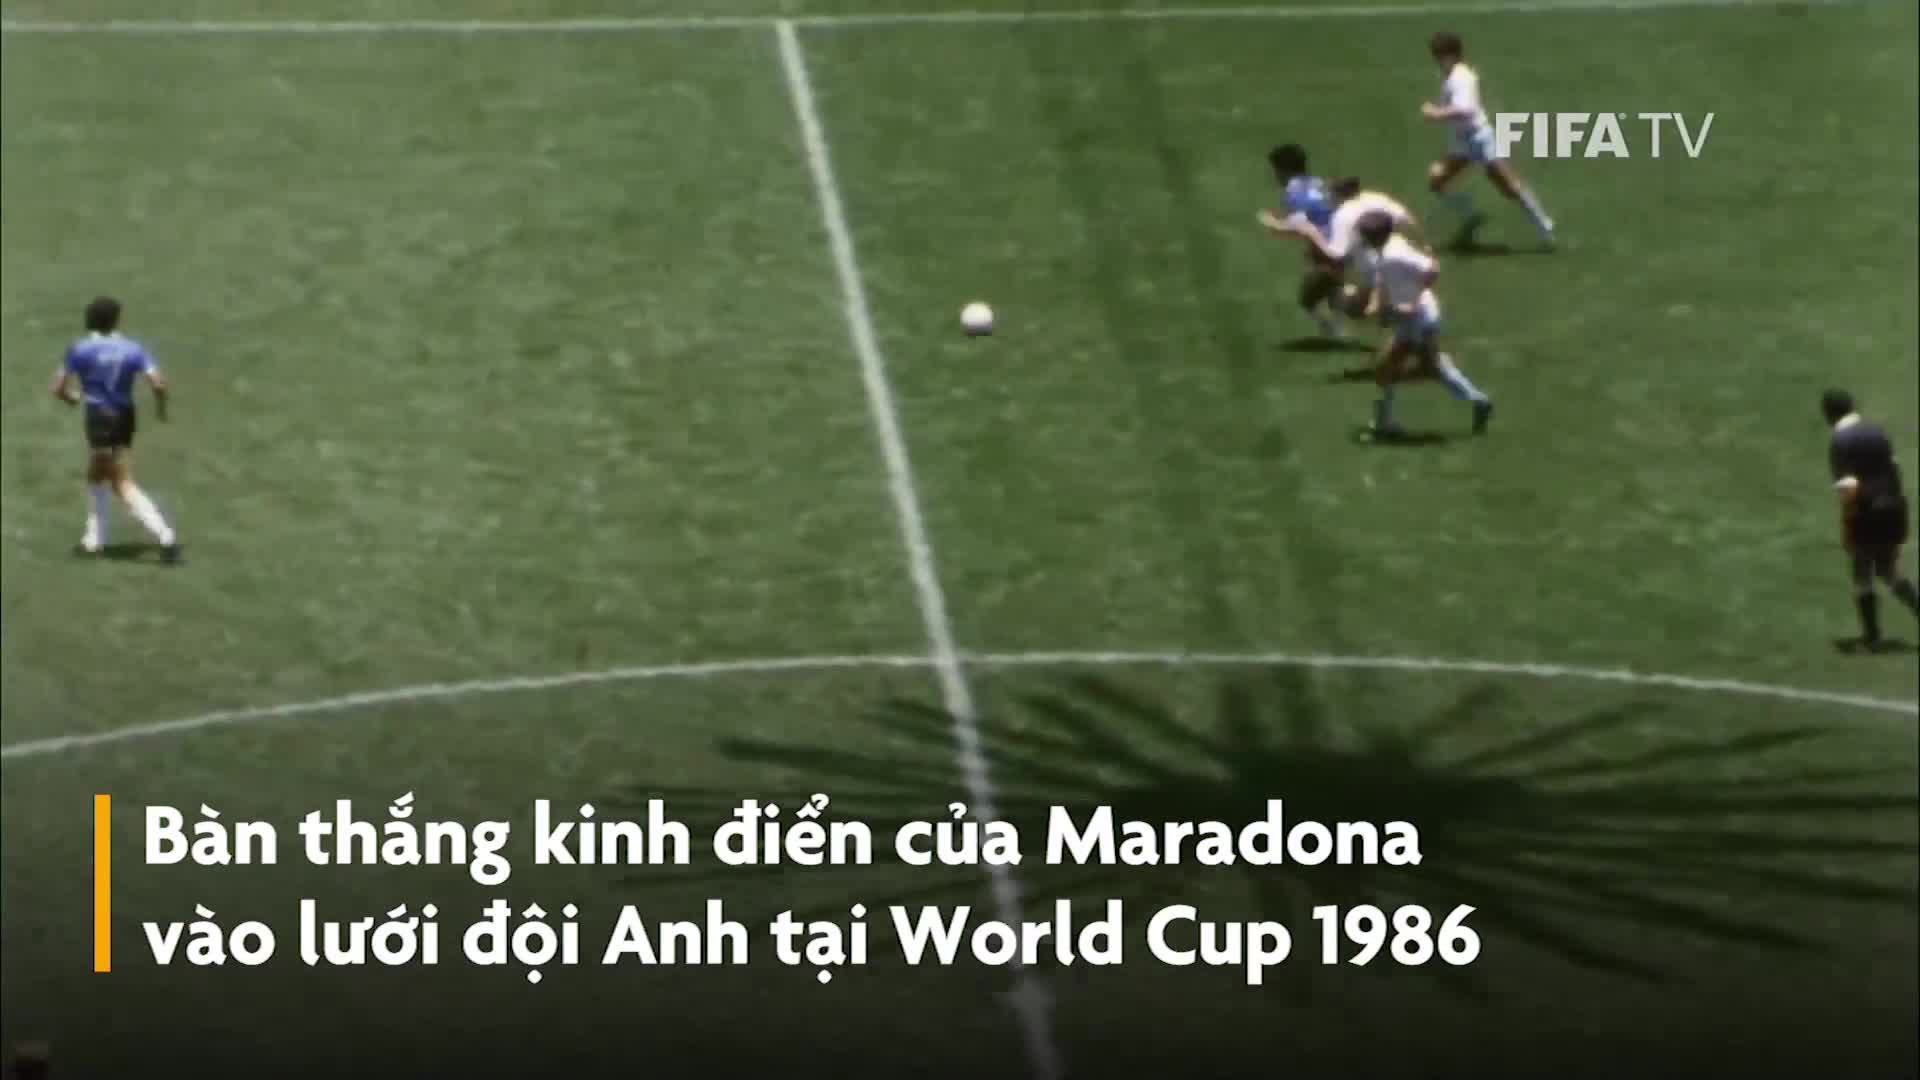 Chiêm ngưỡng bàn thắng thế kỷ của Diego Maradona